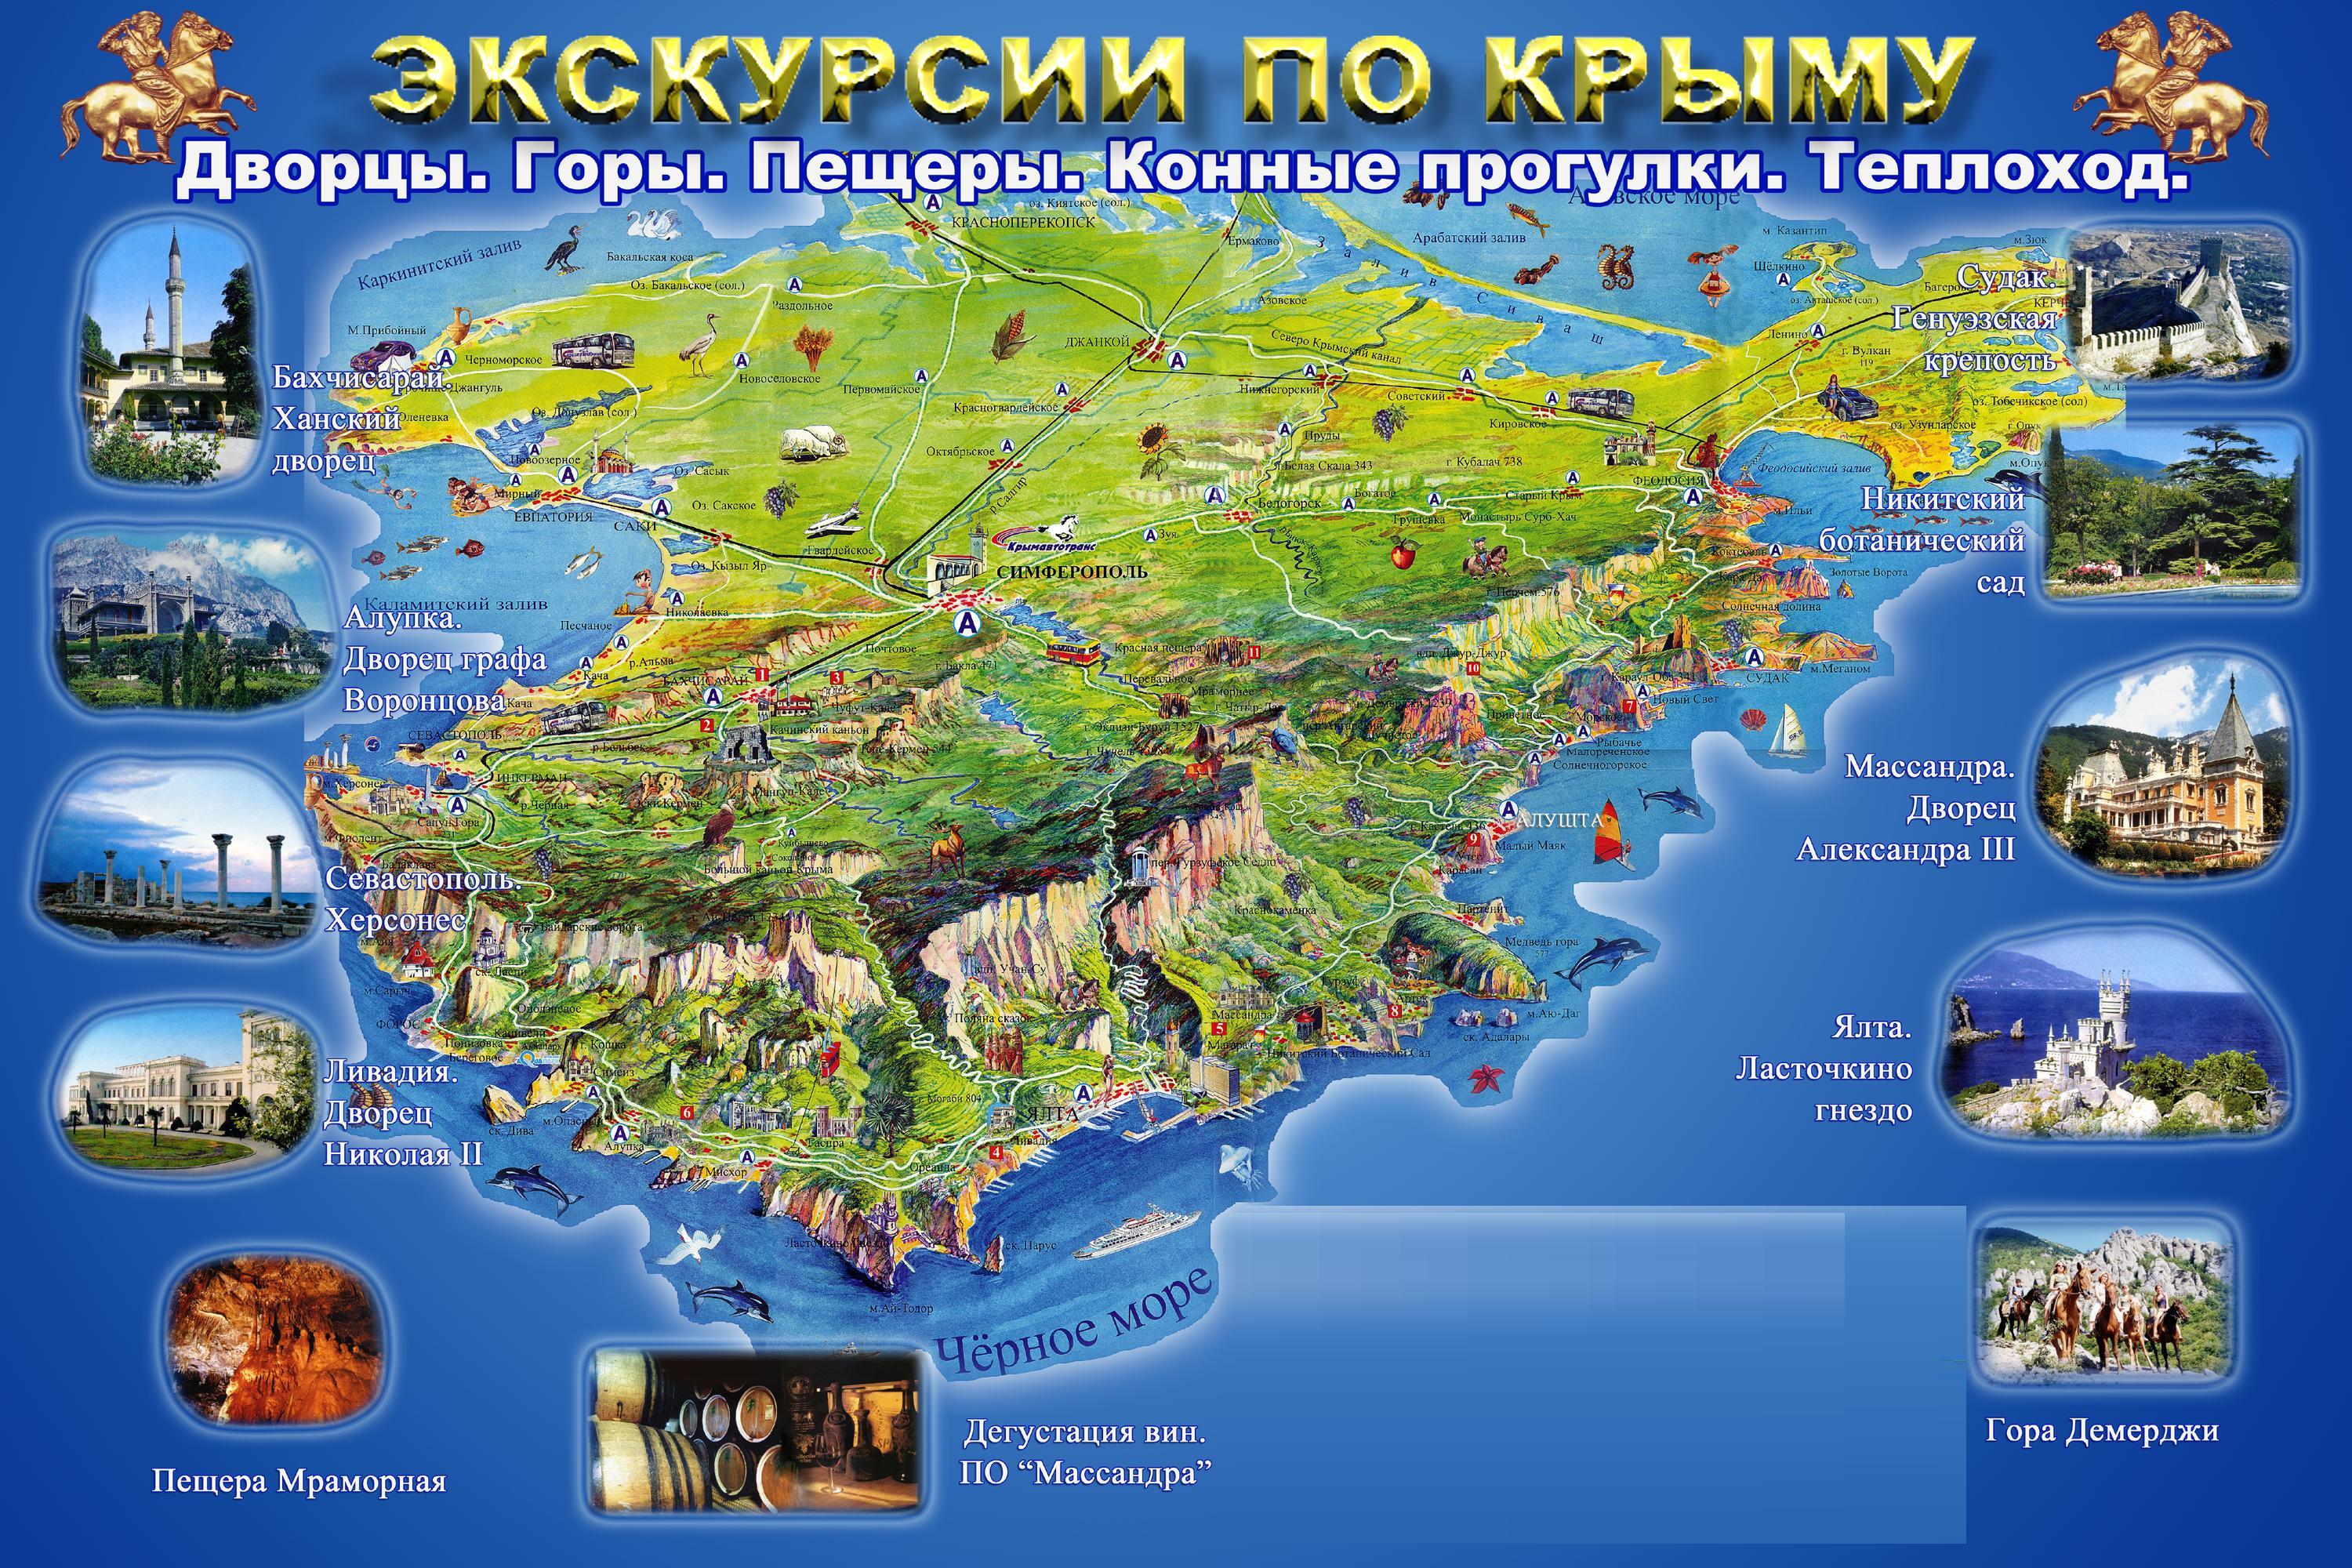 Все достопримечательности на карте Крыма